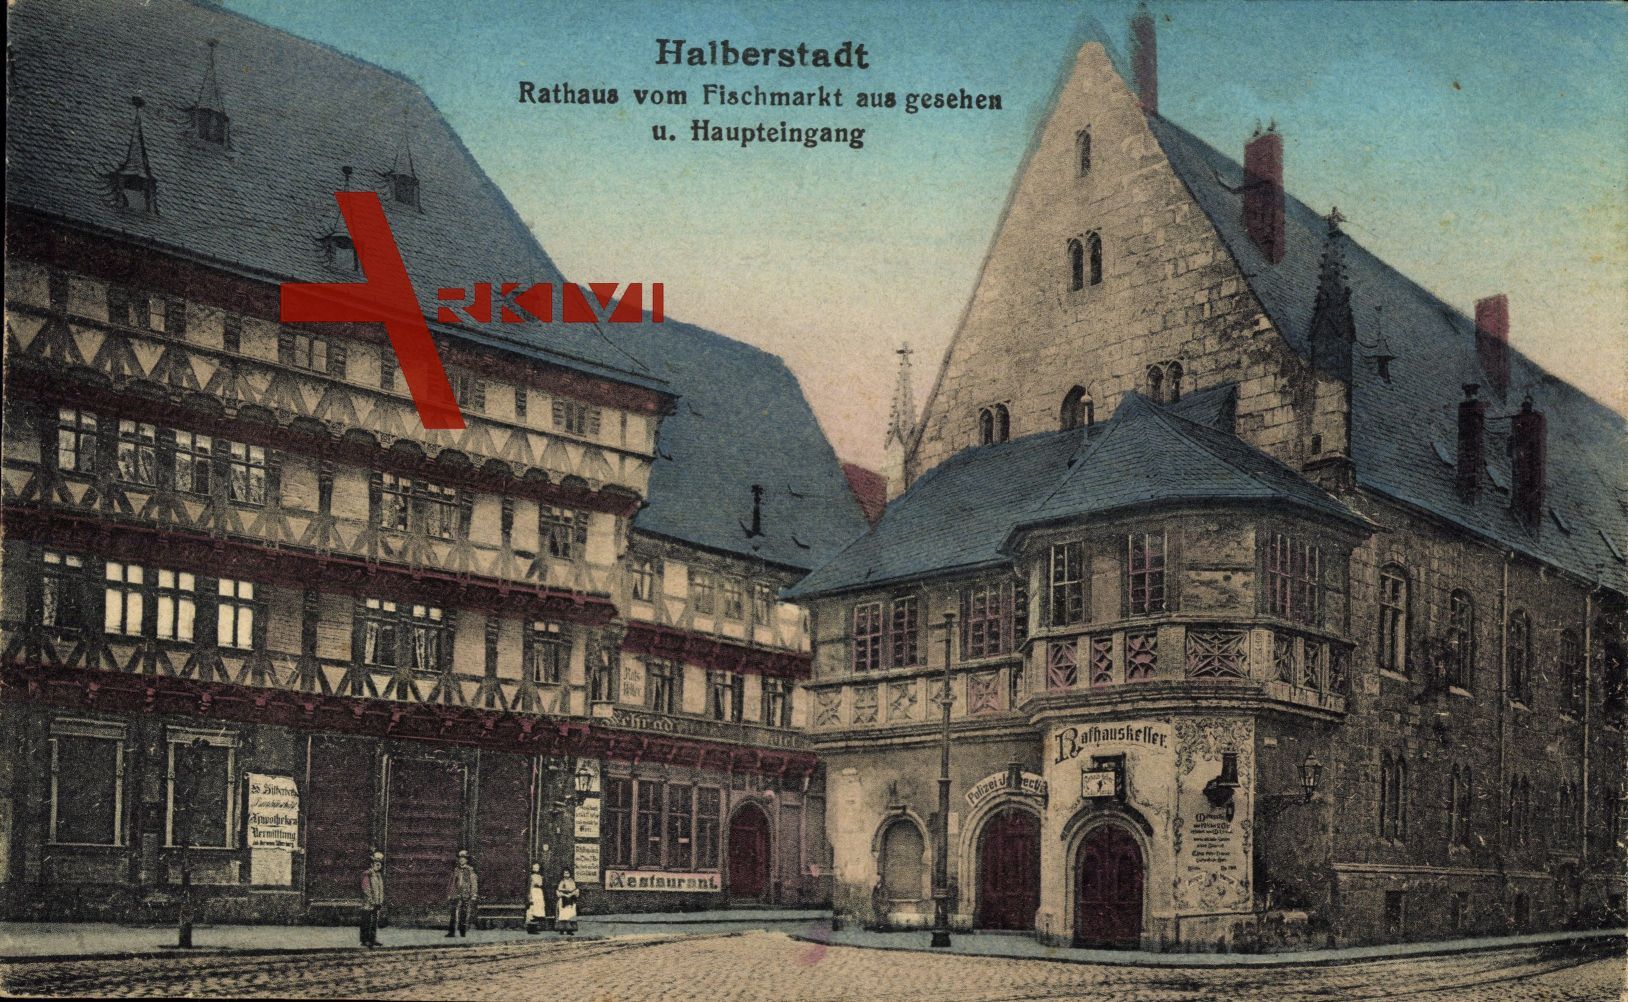 Halberstadt in Sachsen Anhalt, Rathaus vom Fischmarkt aus, Haupteingang